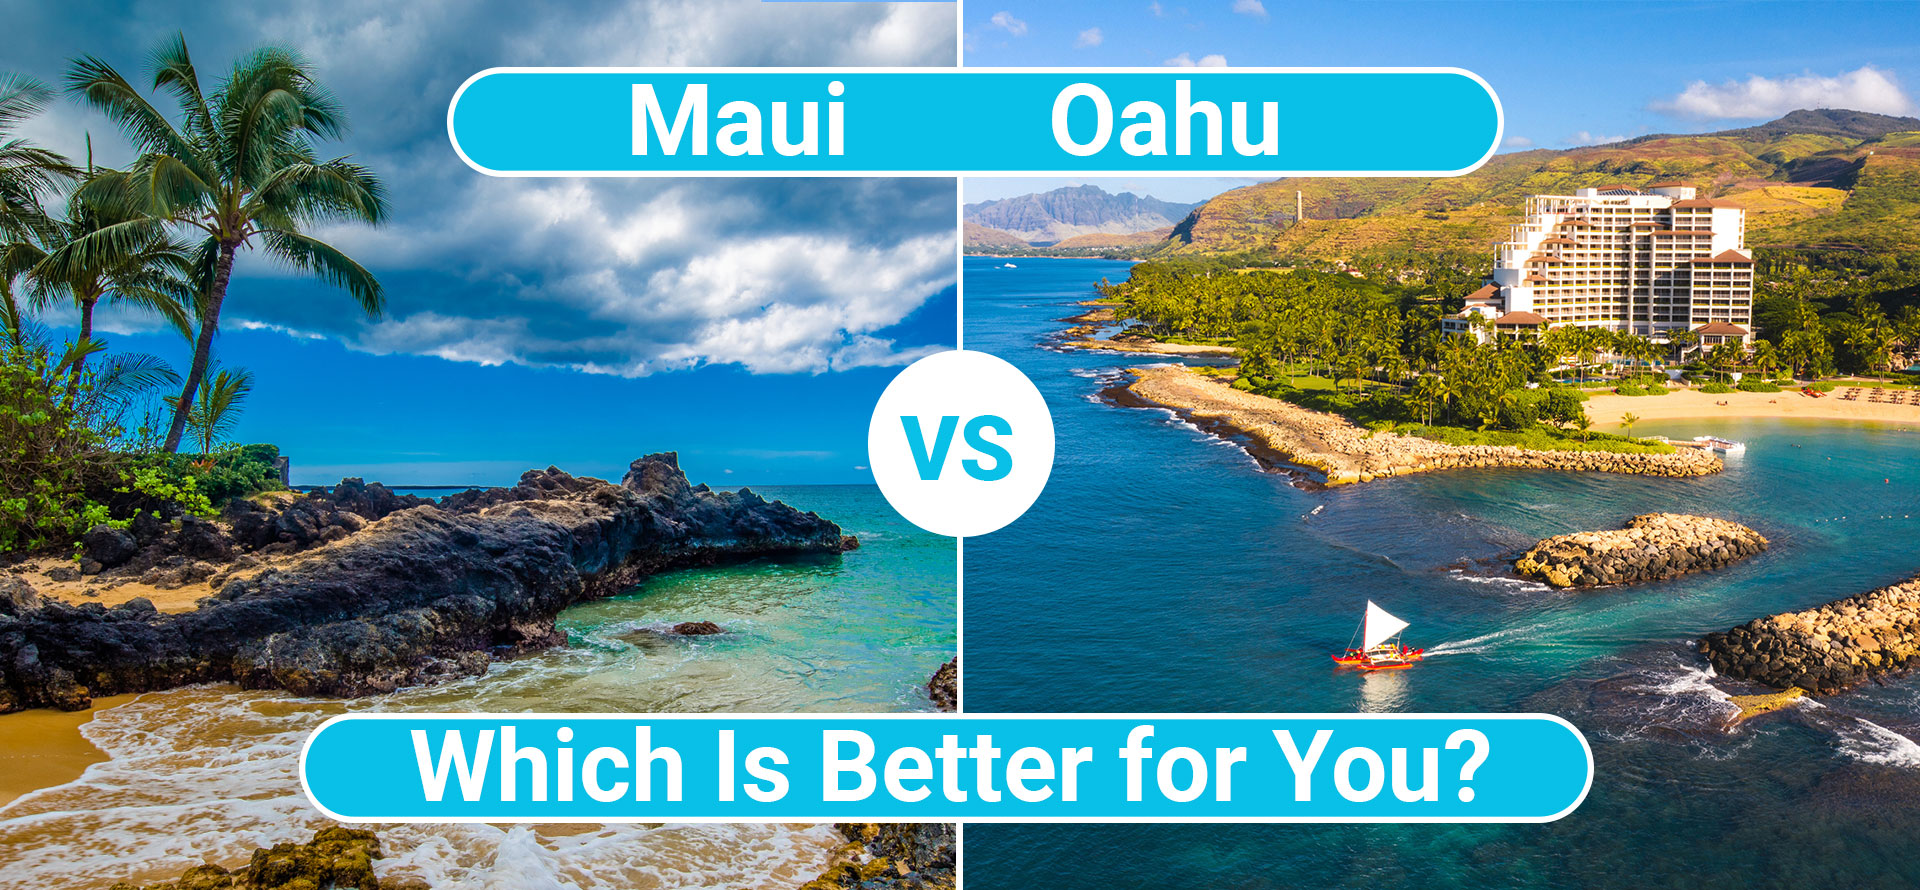 Maui vs Oahu.